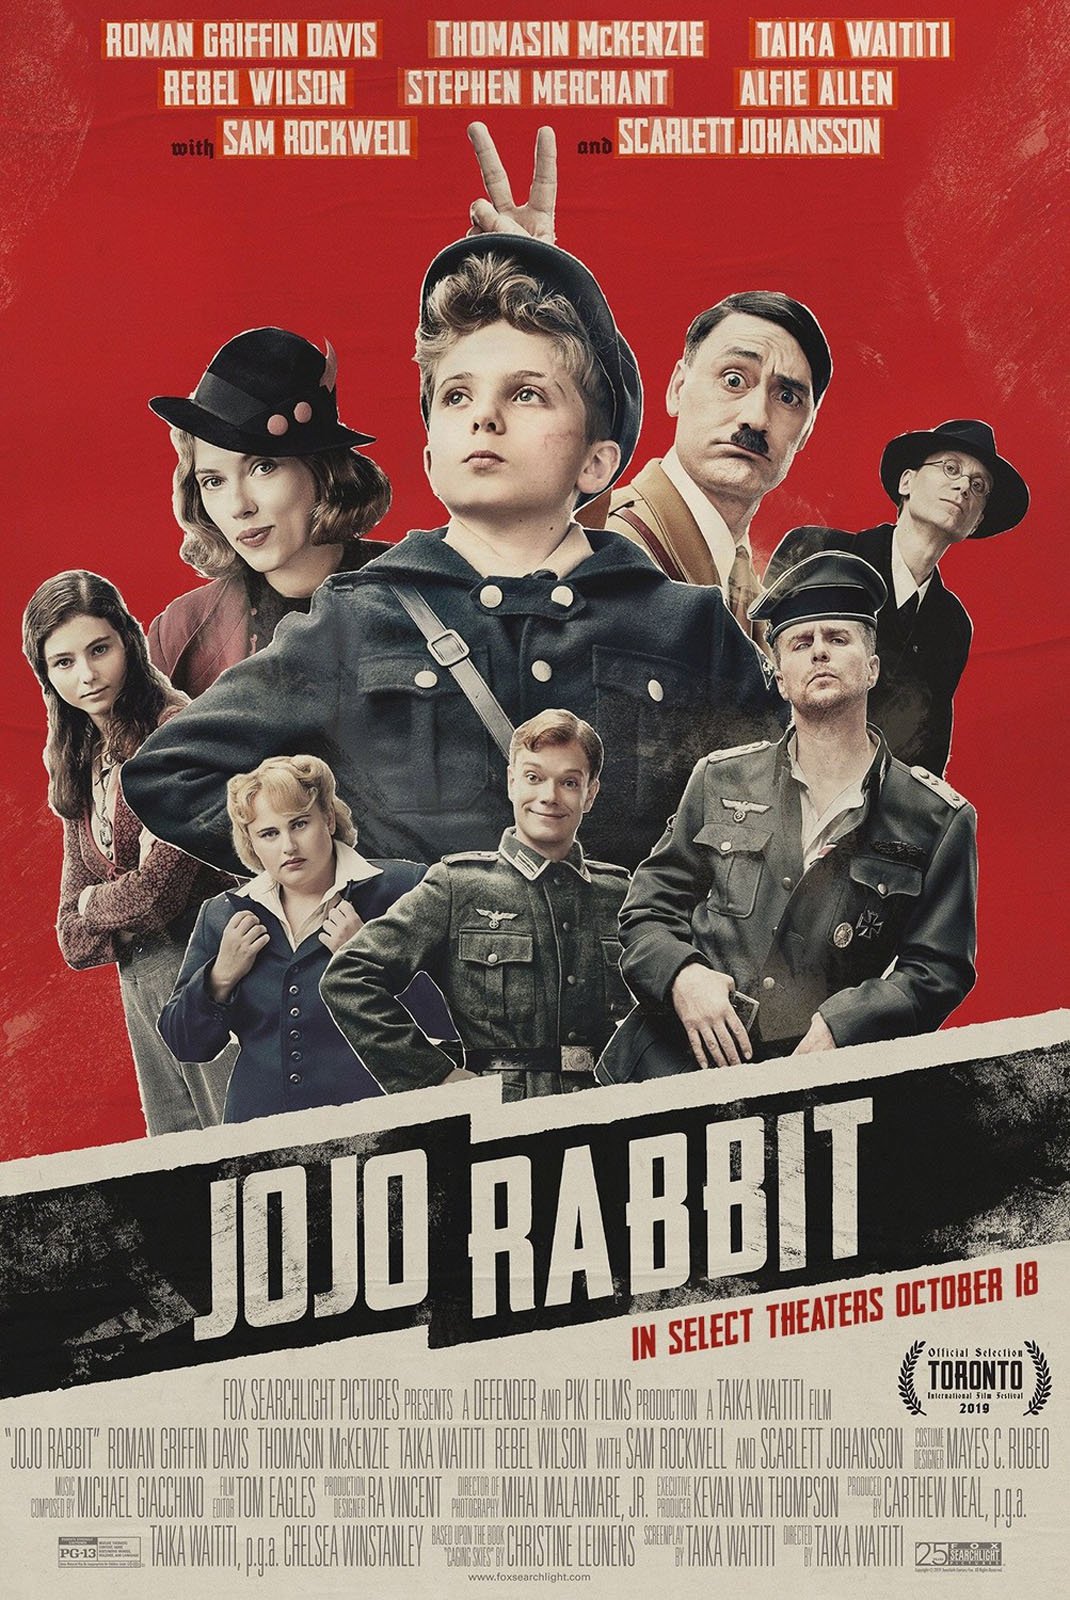 Cartel de Jojo Rabbit - Poster 2 - SensaCine.com